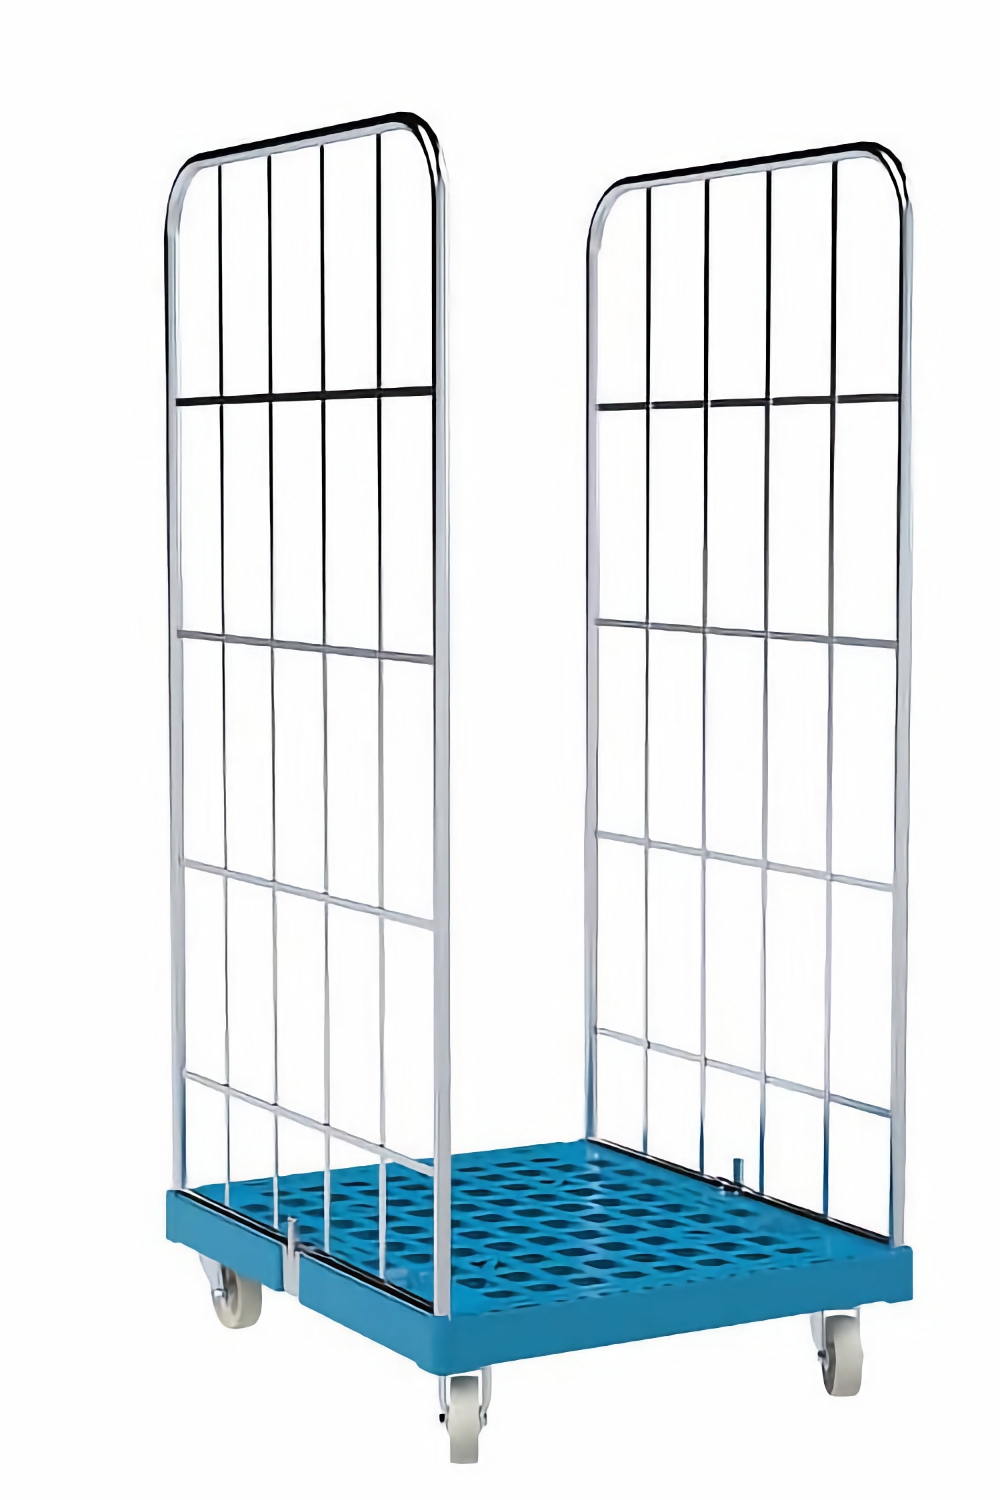 Rollbehälter mit Gitterwänden,2-seitig, Nutzhöhe 1460 mm, Plattform 724x815 mm, lichtblau